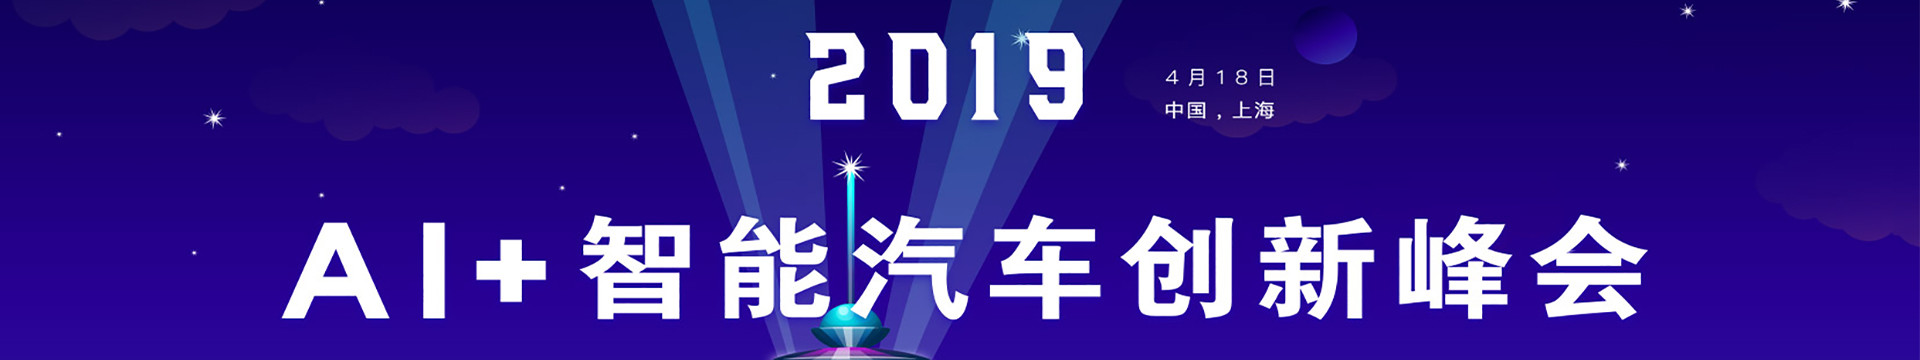 2019 AI+智能汽车创新峰会（上海）